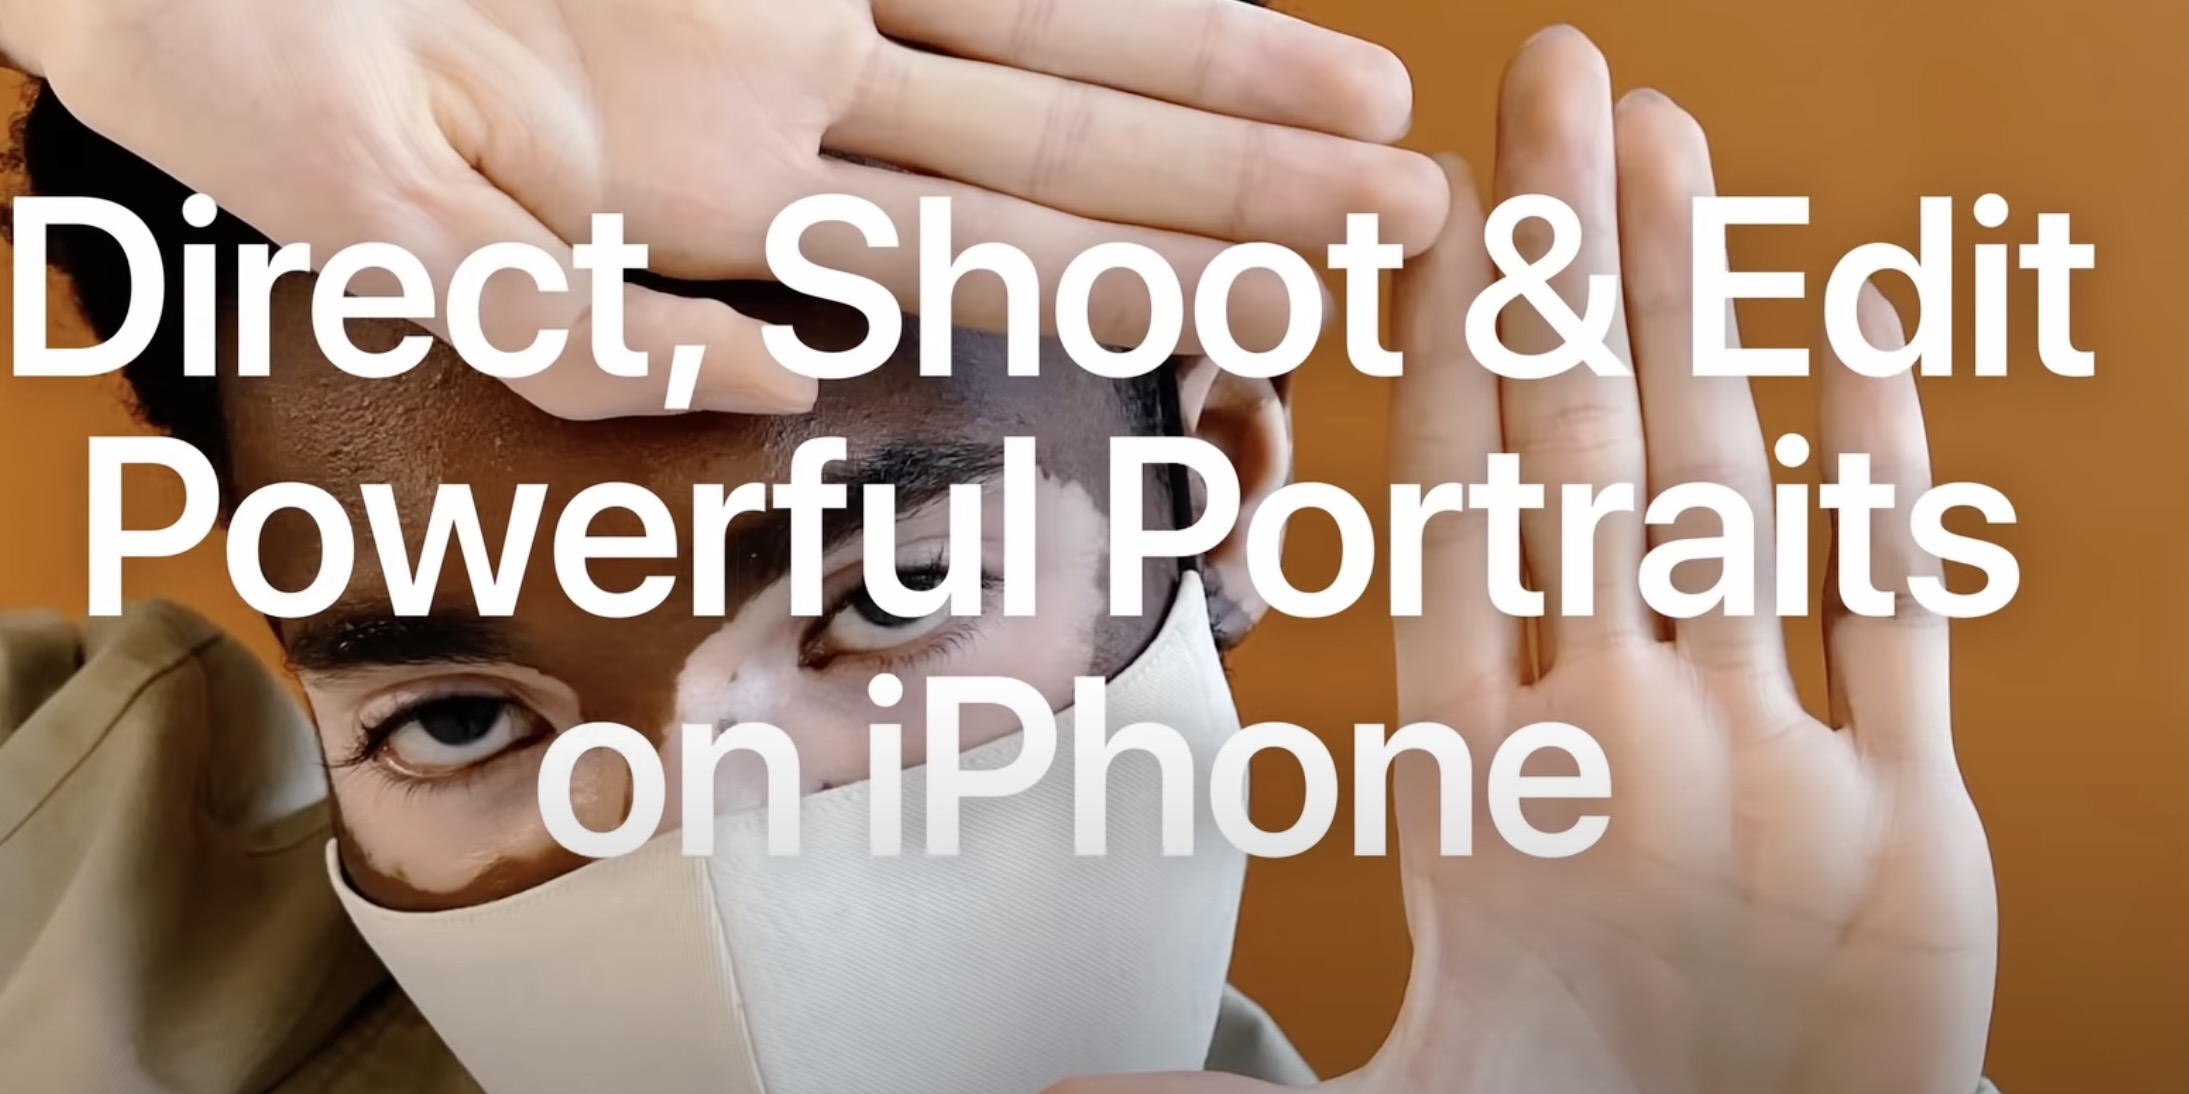 instal the last version for apple PT Portrait Studio 6.0